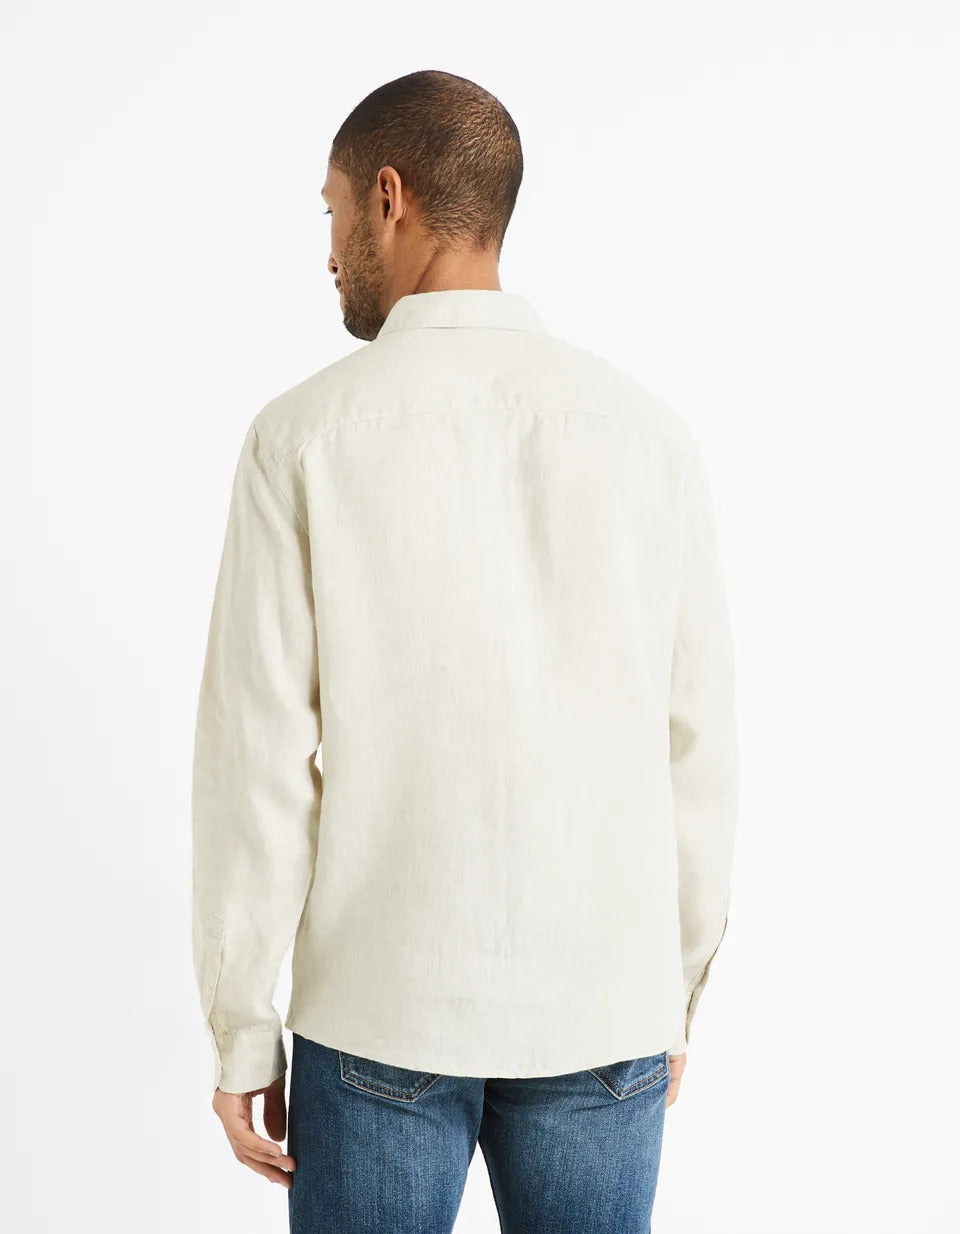 Regular Shirt 100% Linen - Natural - 02